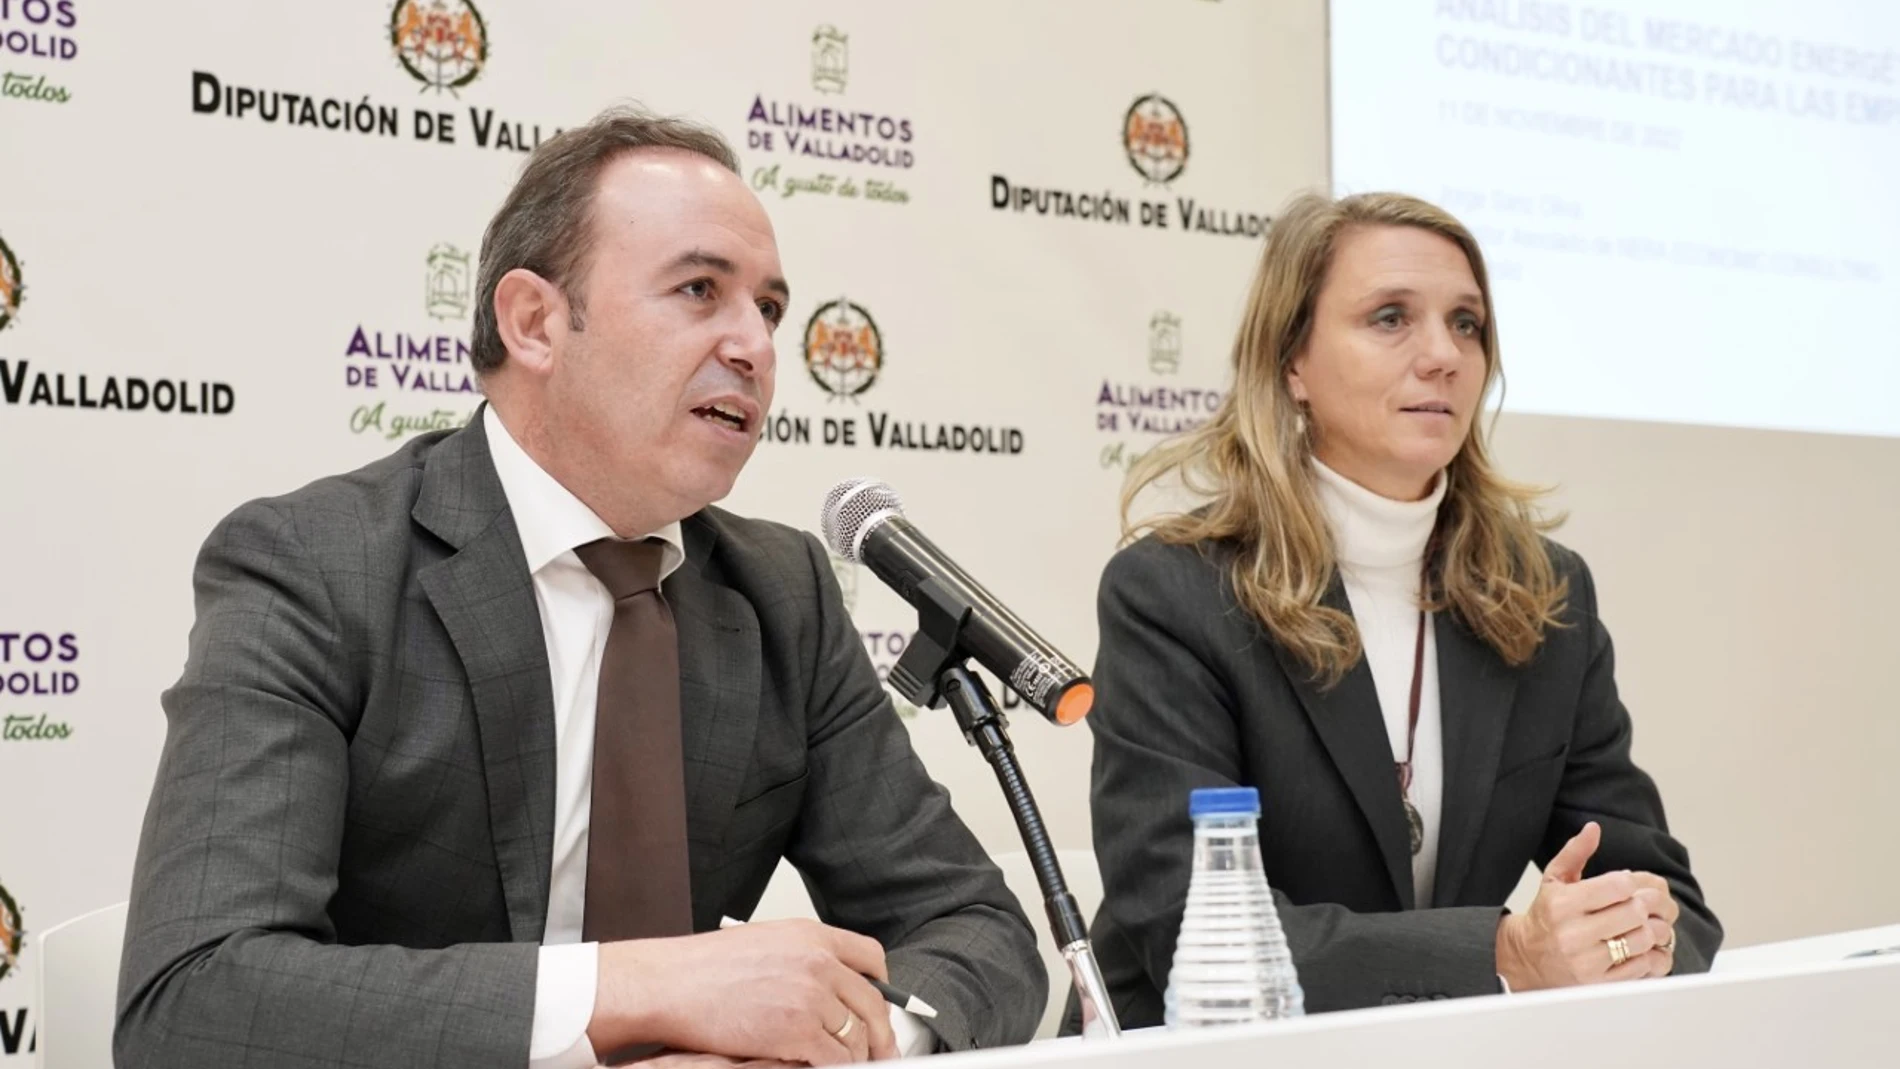 El vicepresidente de la Diputación de Valladolid, Víctor Alonso, y la presidenta de la CEOE Valladolid, Ángela de Miguel, participan en un encuentro empresarial